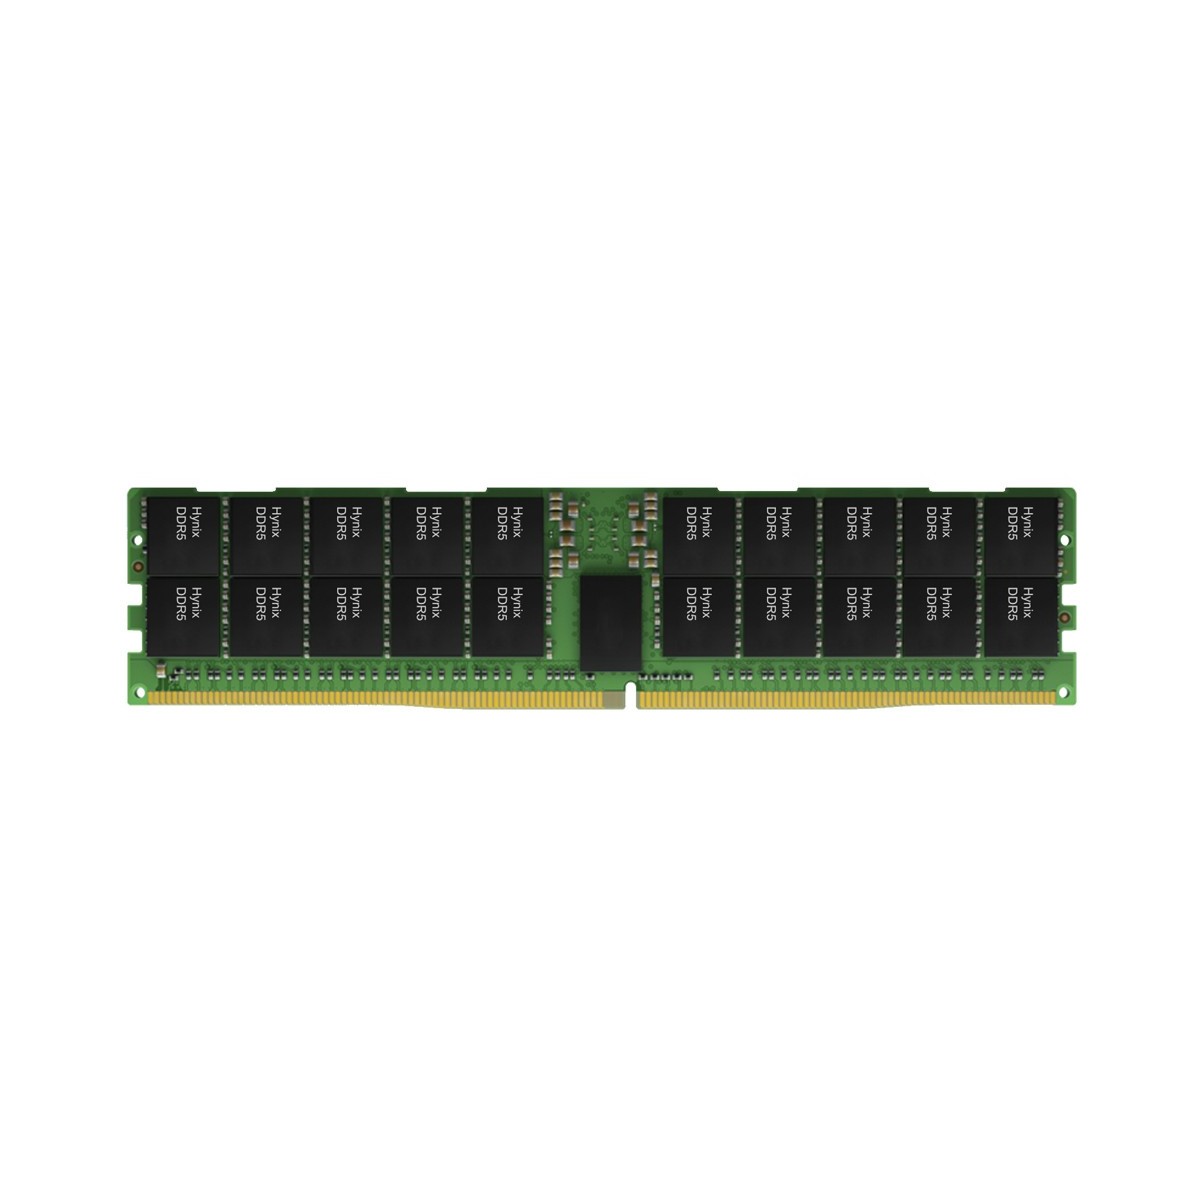 Hynix 16 GB reg. ECC DDR5-4800 HMCG78MEBRA107N - 1x 16GB DDR5-4800 - Reg. EC